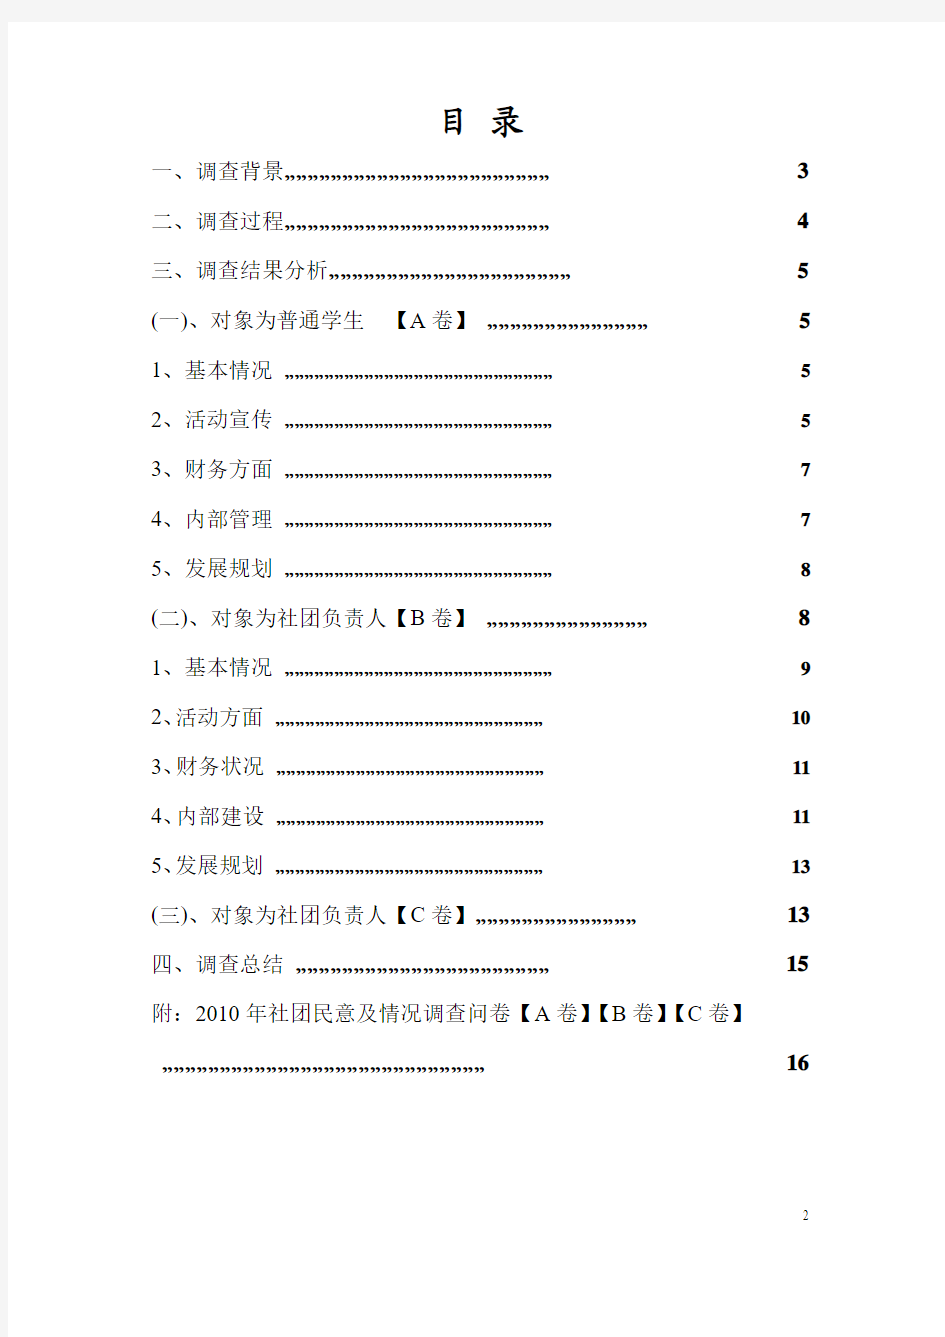 中国地质大学2010年社团民意调查报告